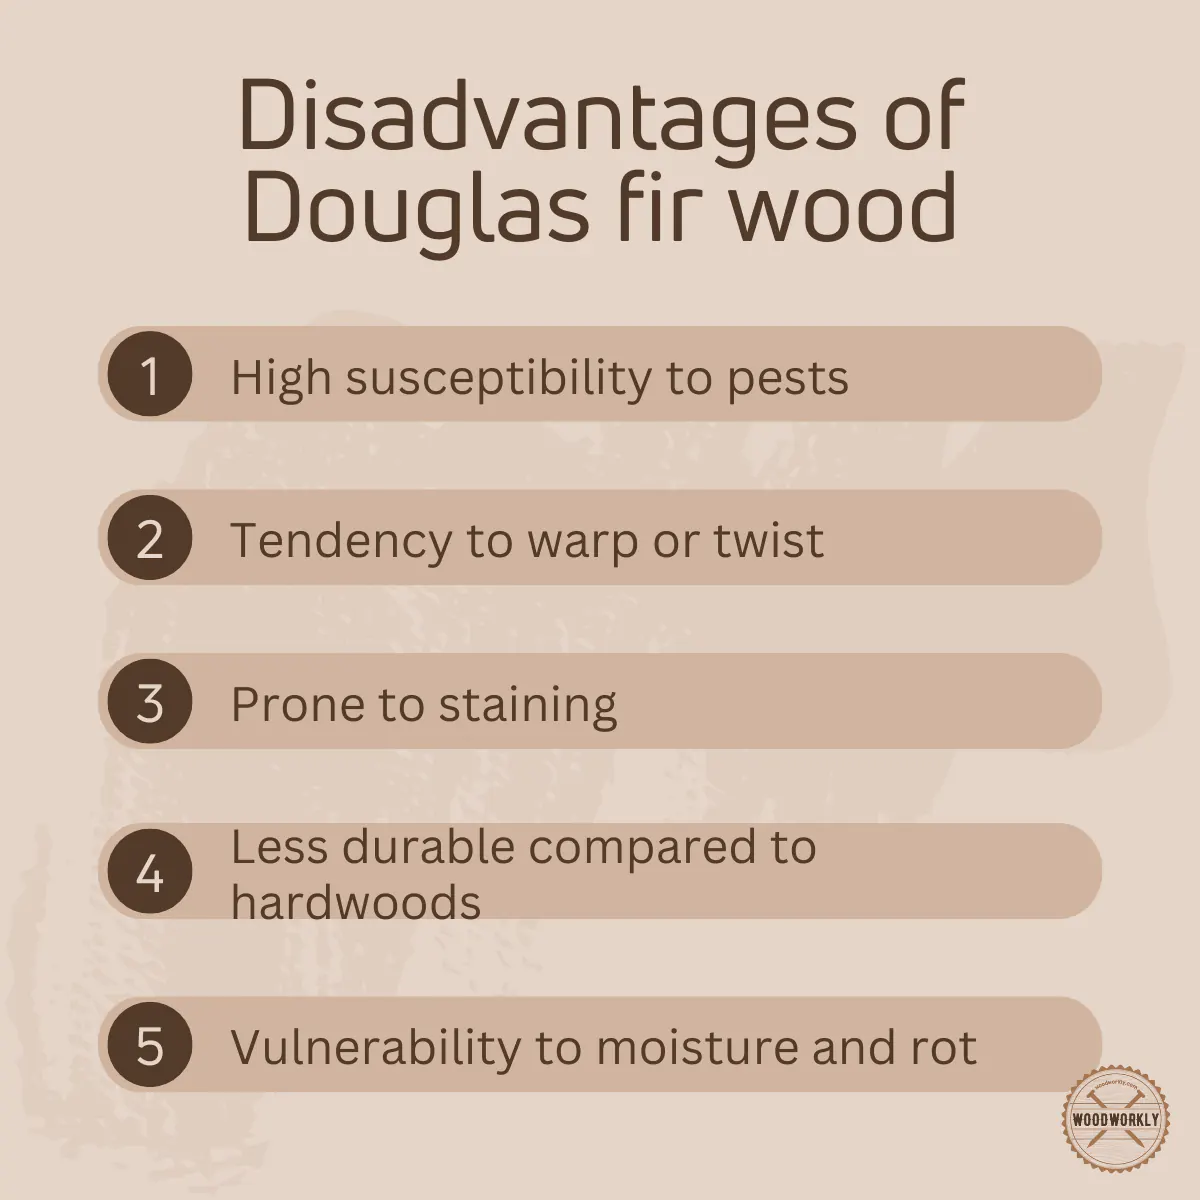 Disadvantages of Douglas fir wood